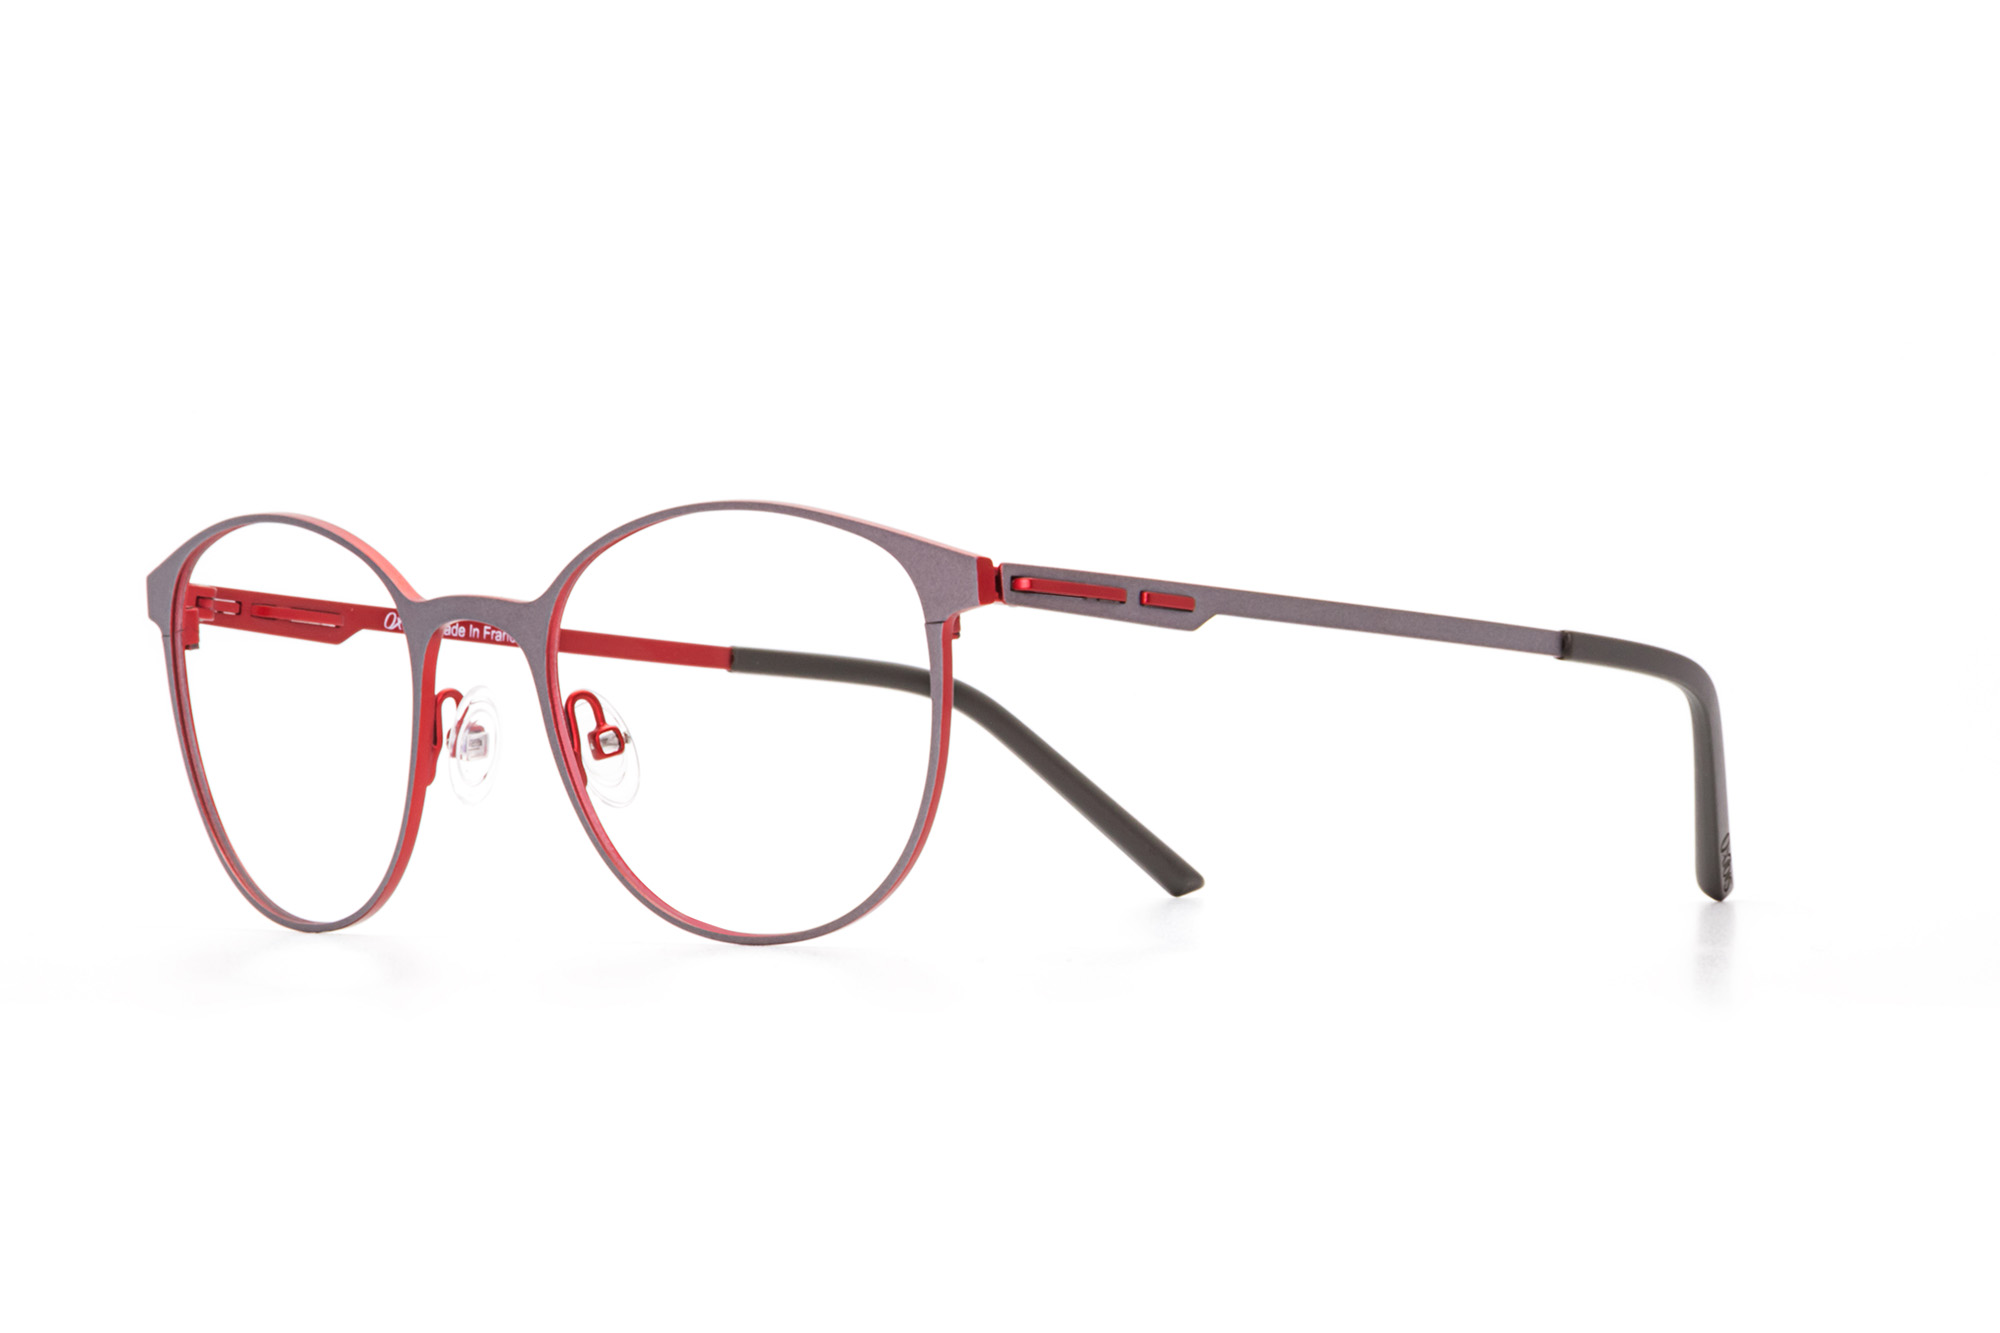 Oxibis Baggy 1 BA1C1 50 orta ekartman gri ve kırmızı renkli yuvarlak model numaralı unisex optik gözlük çerçevesi